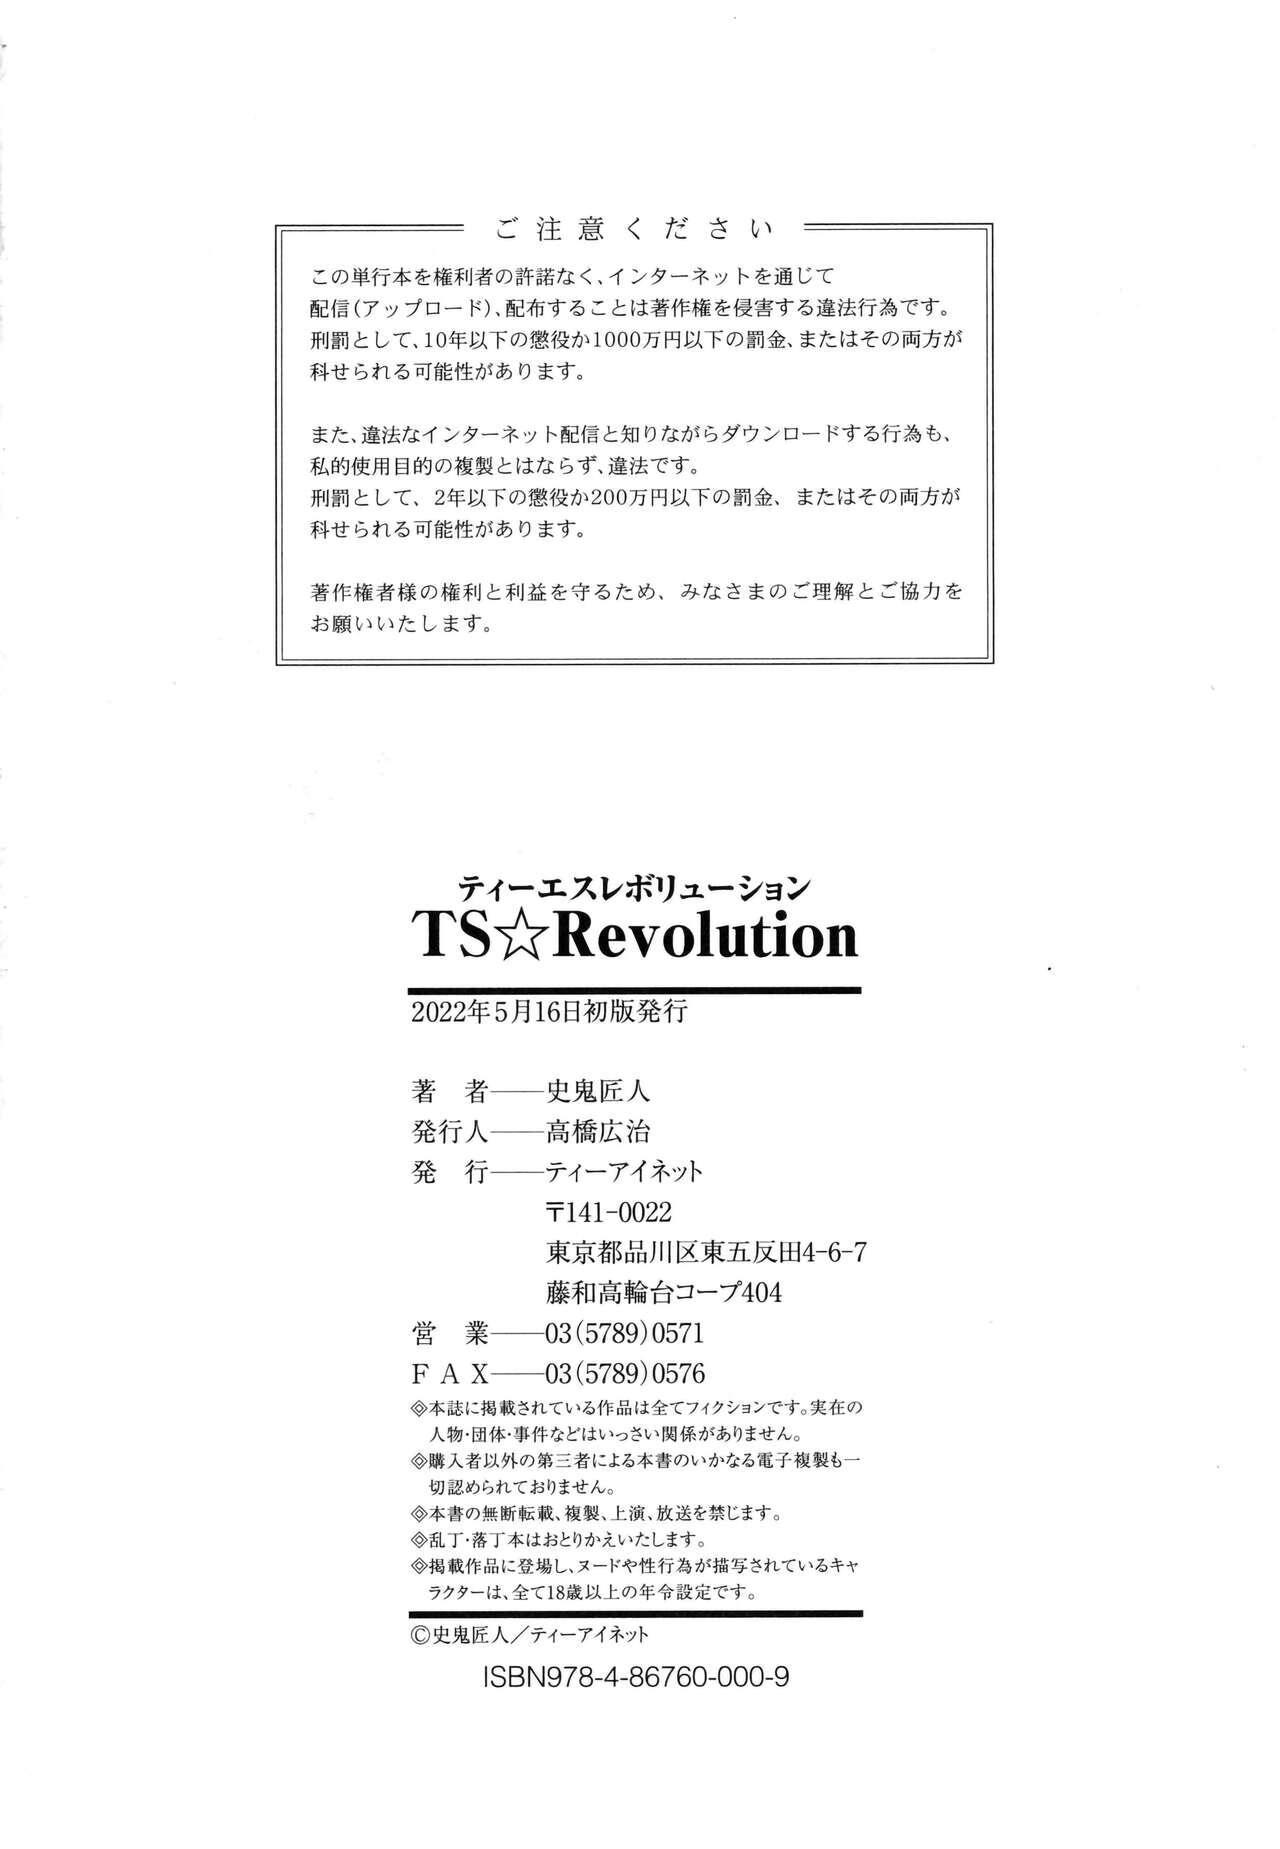 TS Revolution 218